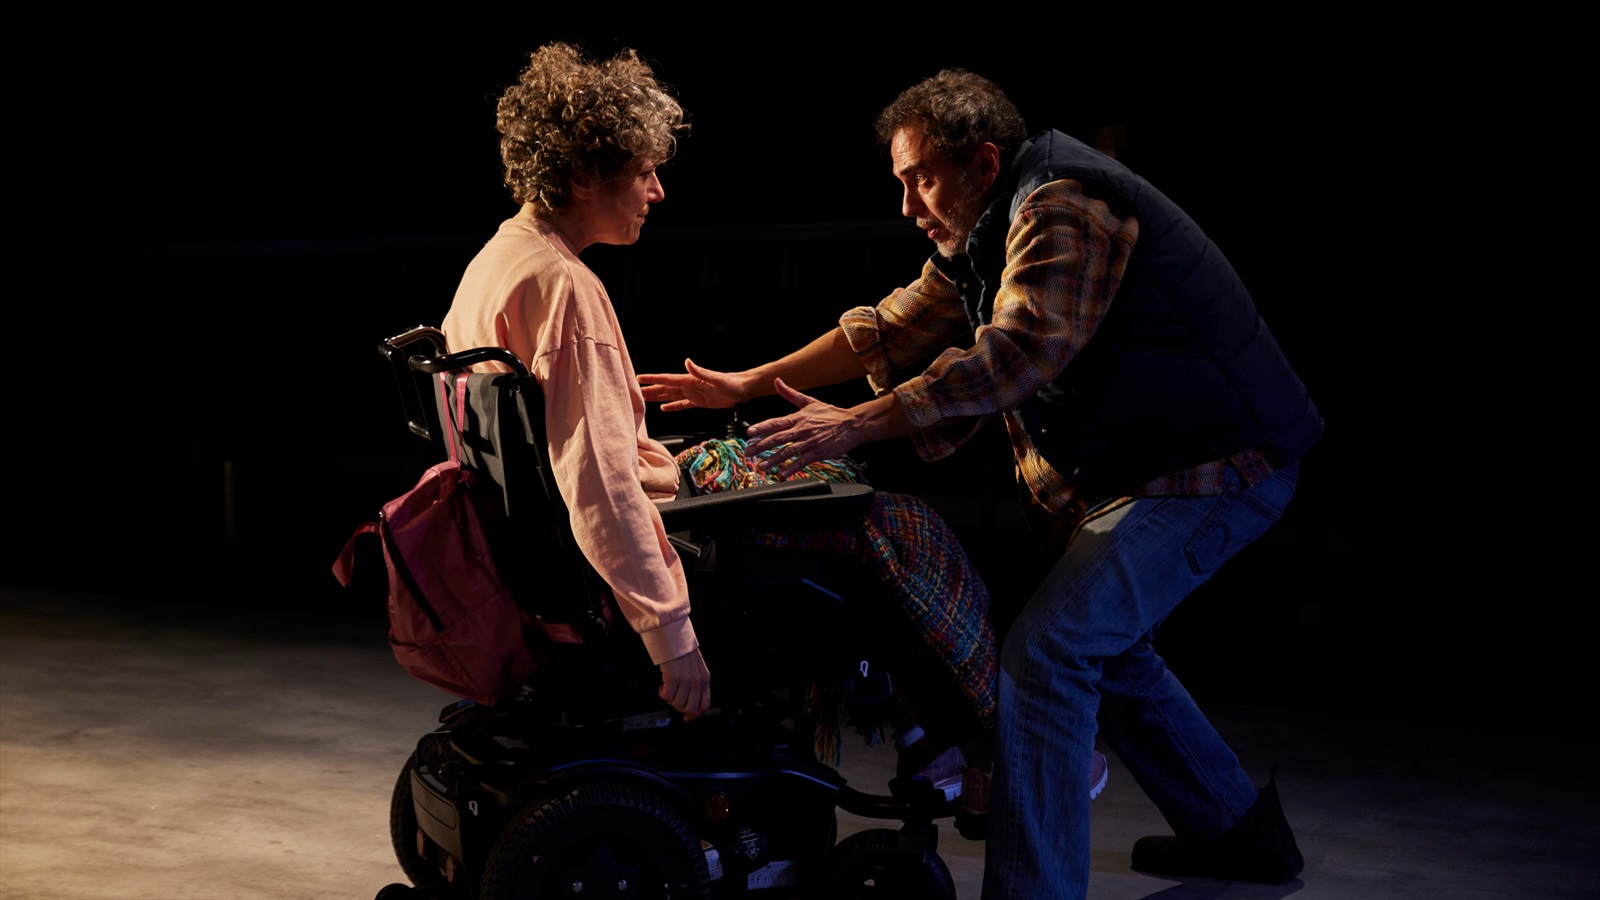 Cost de Vida, amb Julio Manrique i Anna Sahun, al Teatre Municipal de Roses el 2 de desembre